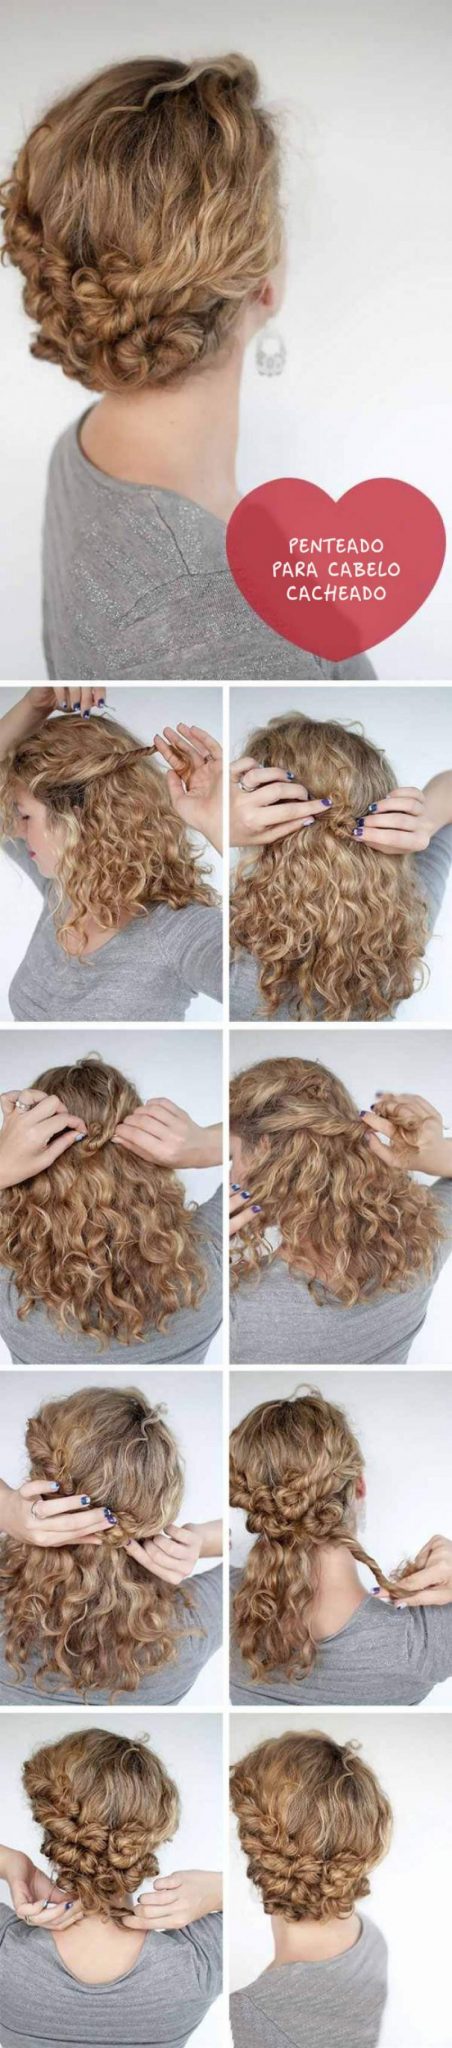 16 Penteados fantásticos para cabelos cacheados e curtos - Site de Beleza e  Moda